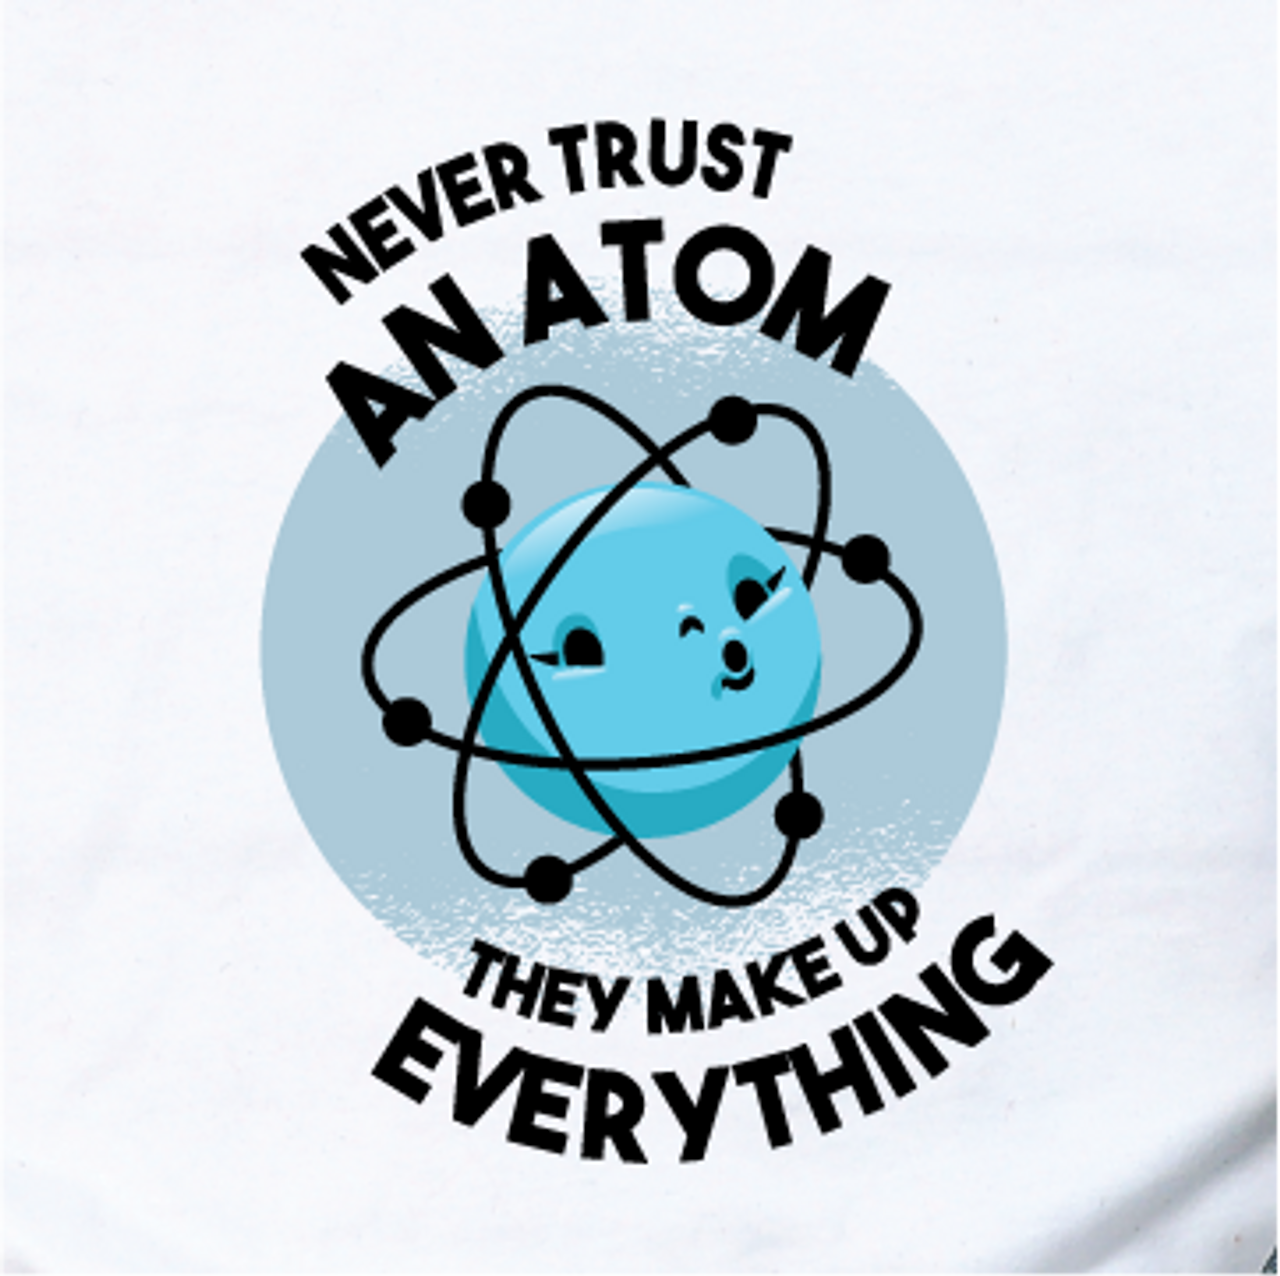 "Never trust an Atom" (cartoon style)